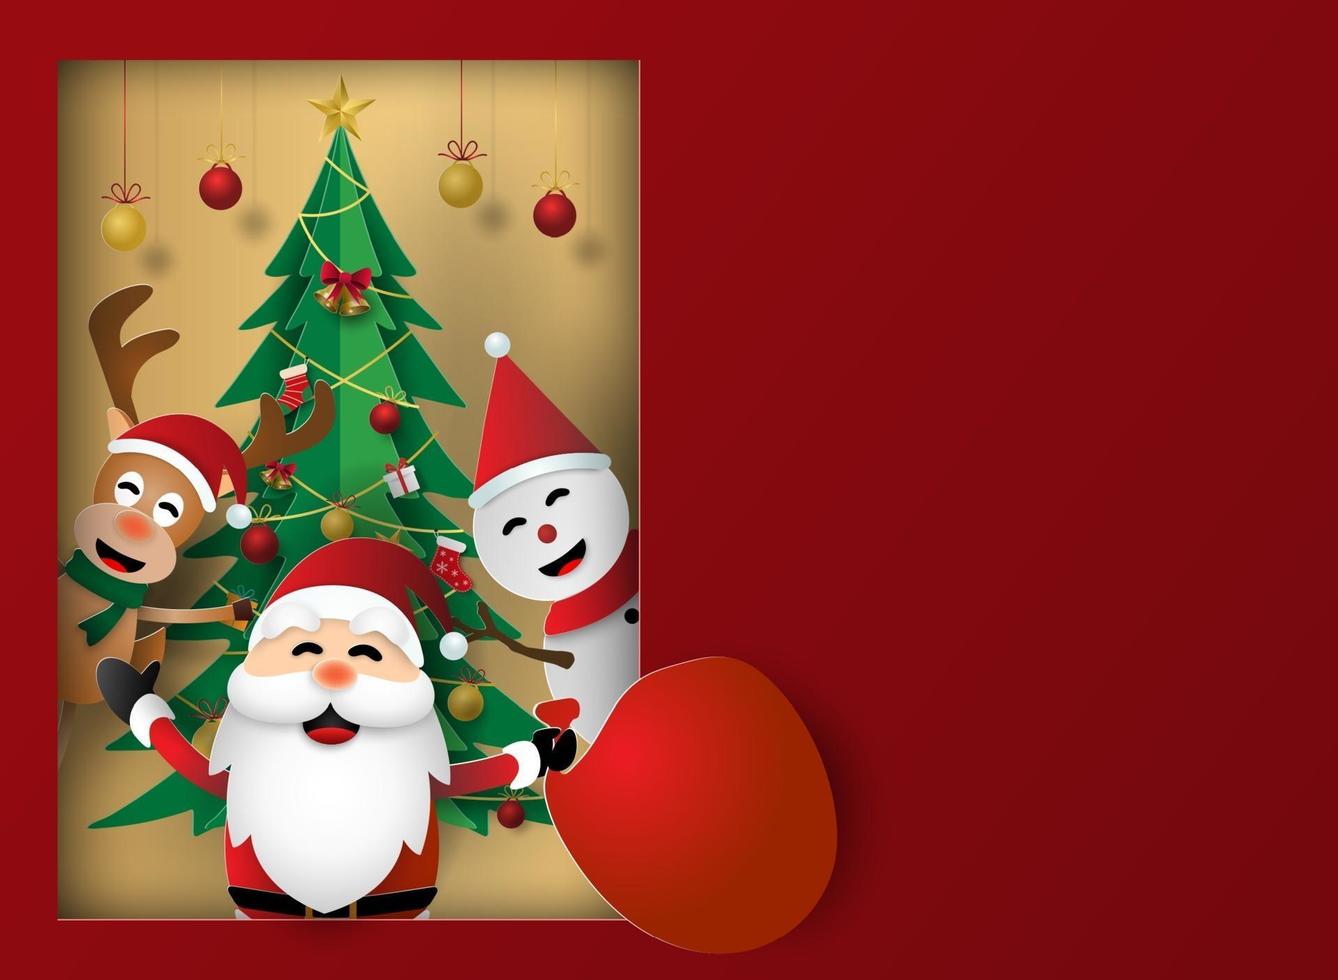 julfest, god jul, kan användas för kort, affisch, banner vektor